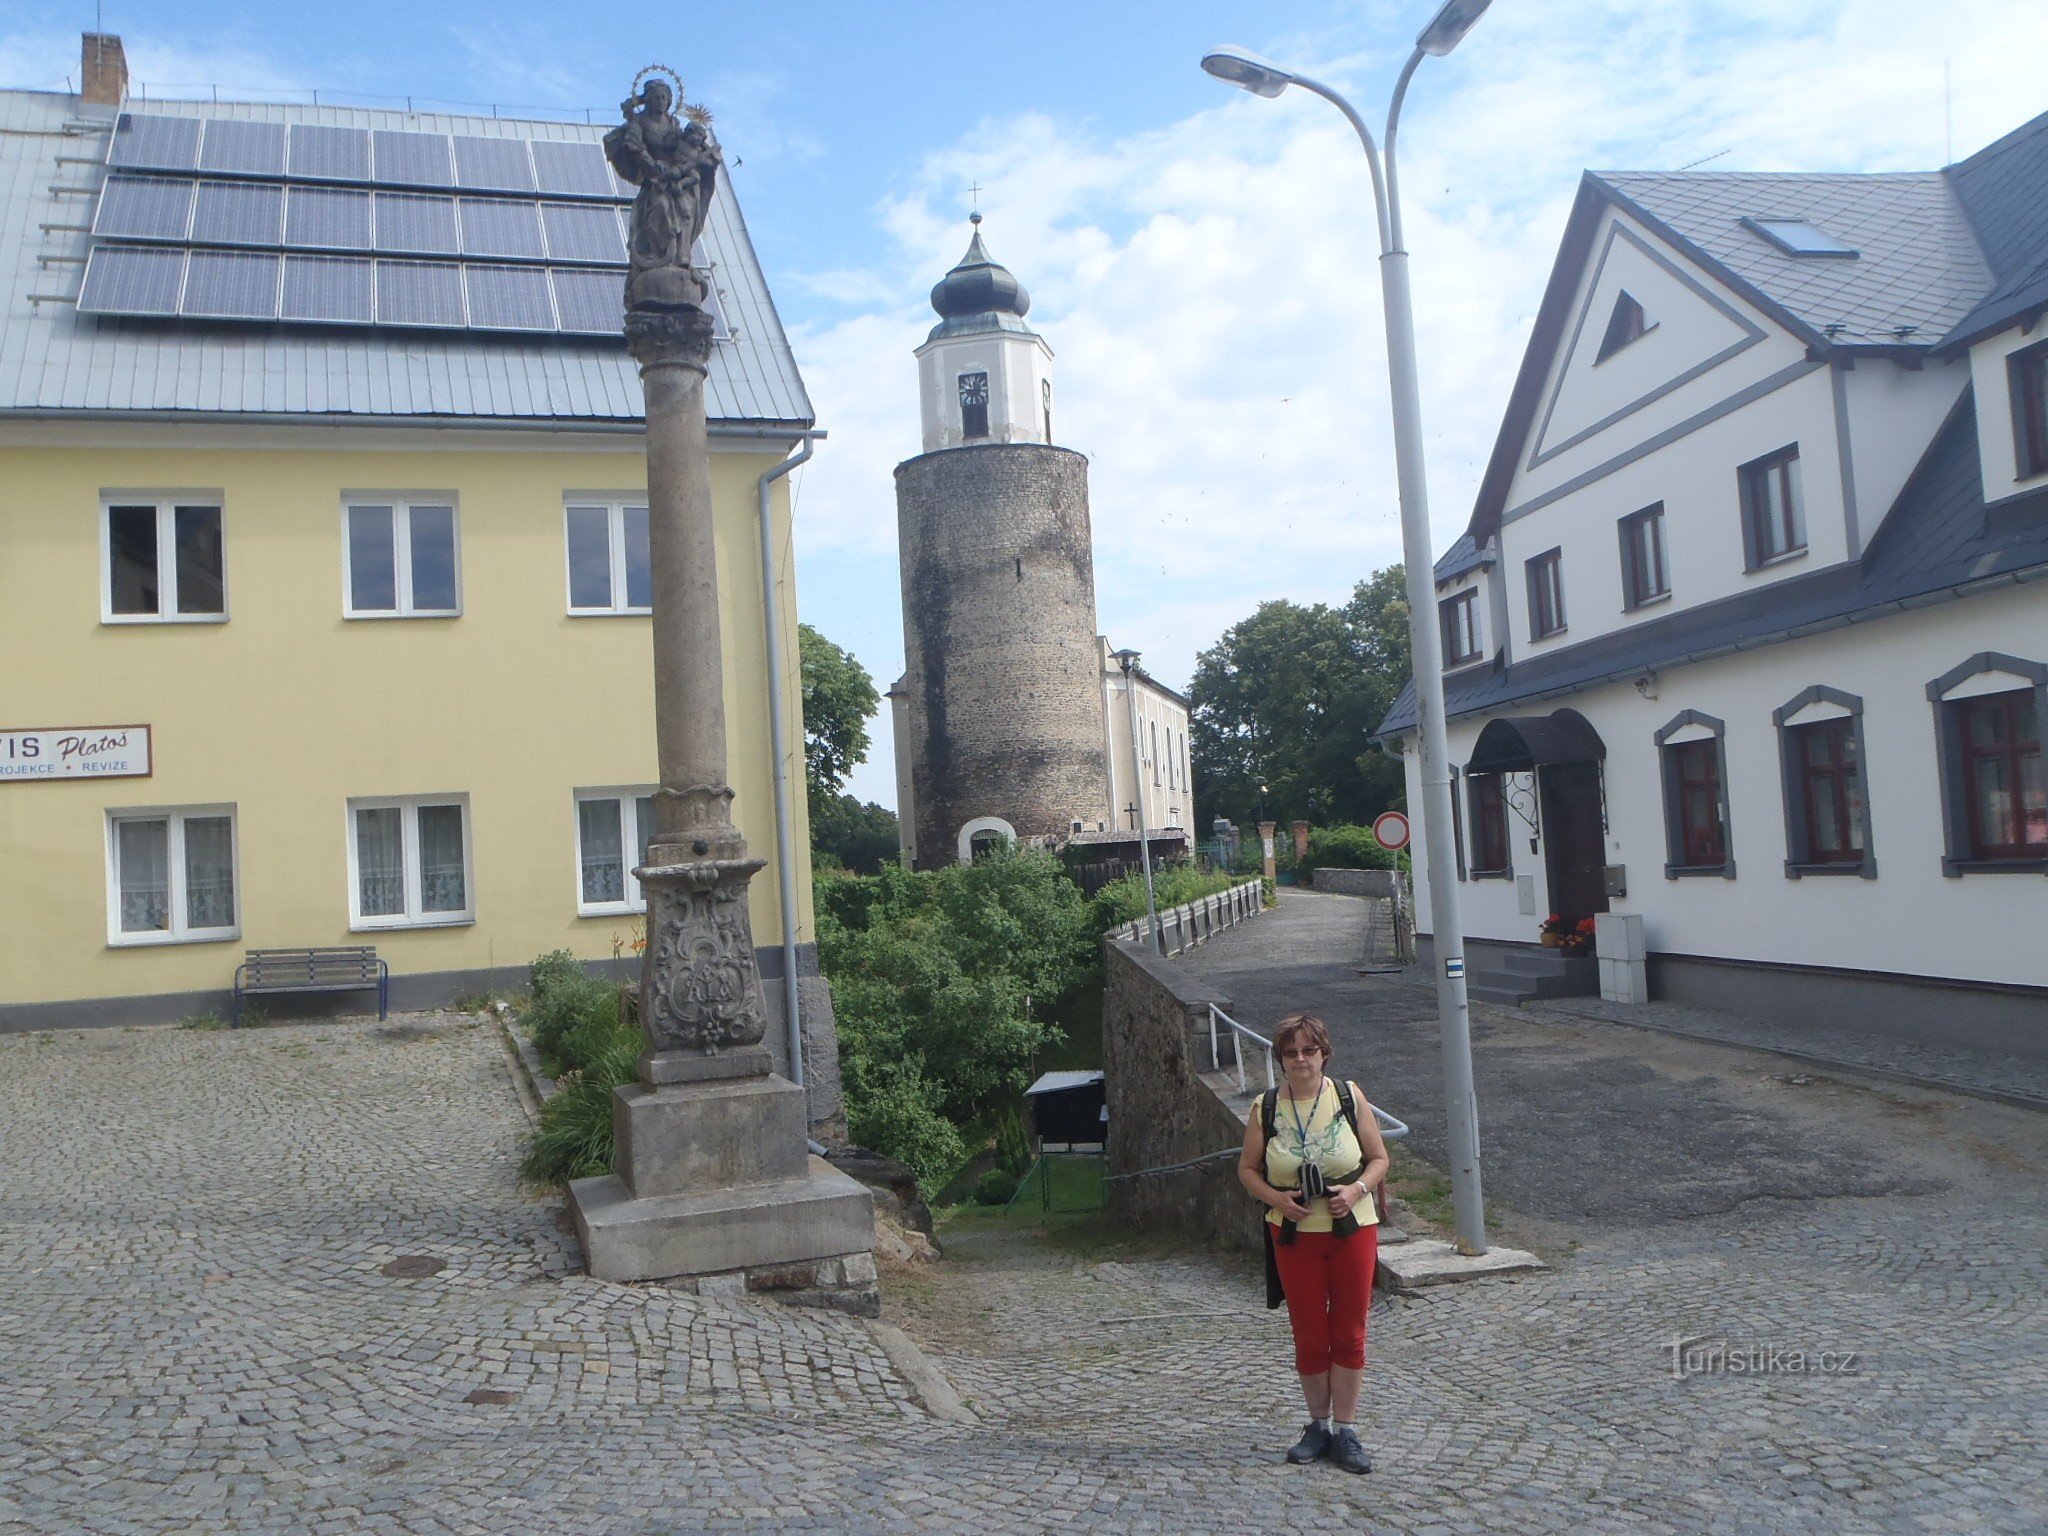 On Máměstí, behind the tower of Frýdberk Castle